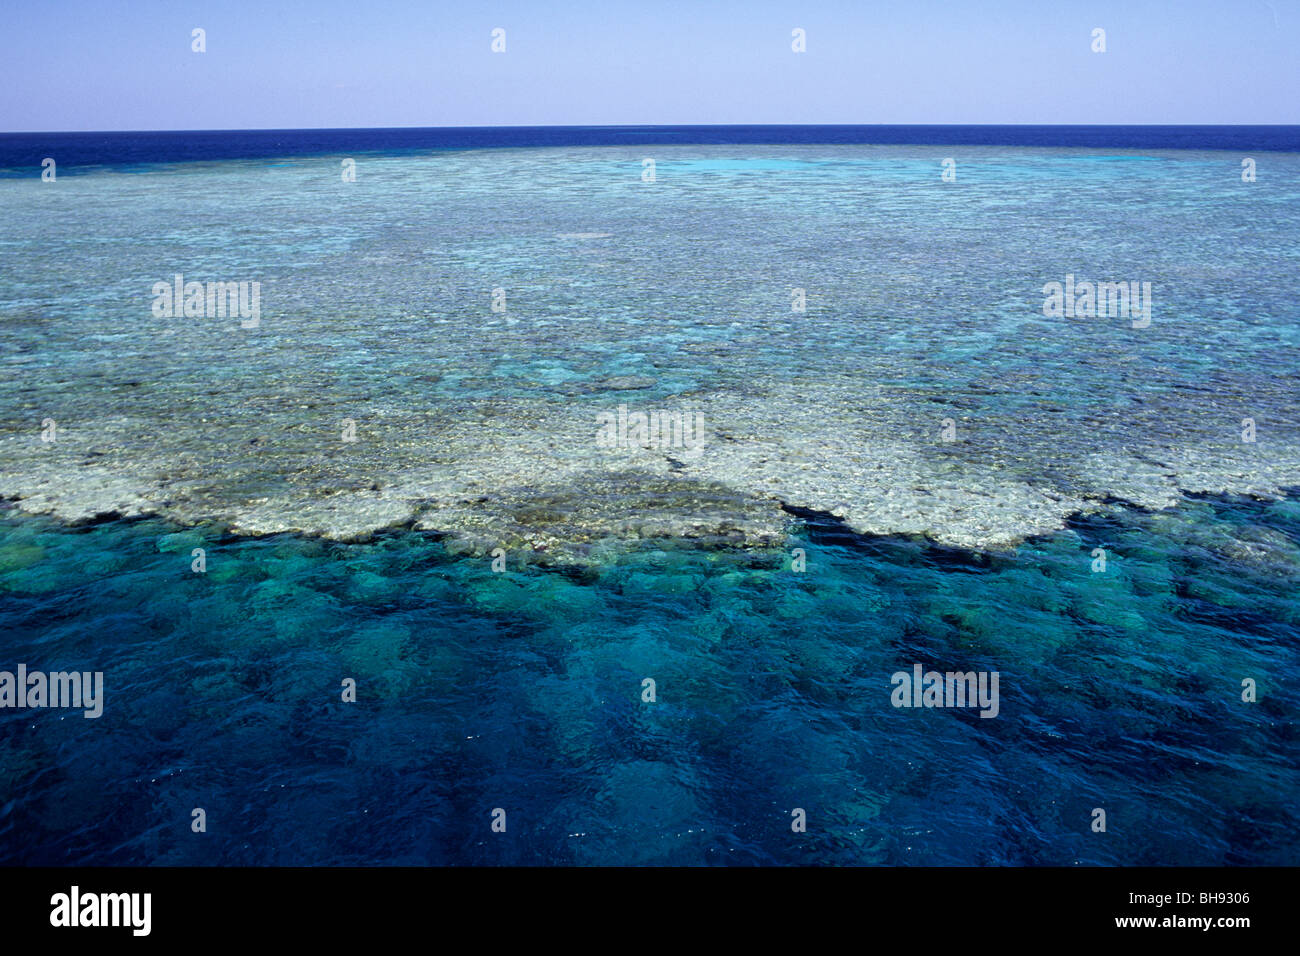 Los corales aparece en superficie, Mar Rojo, Egipto Foto de stock